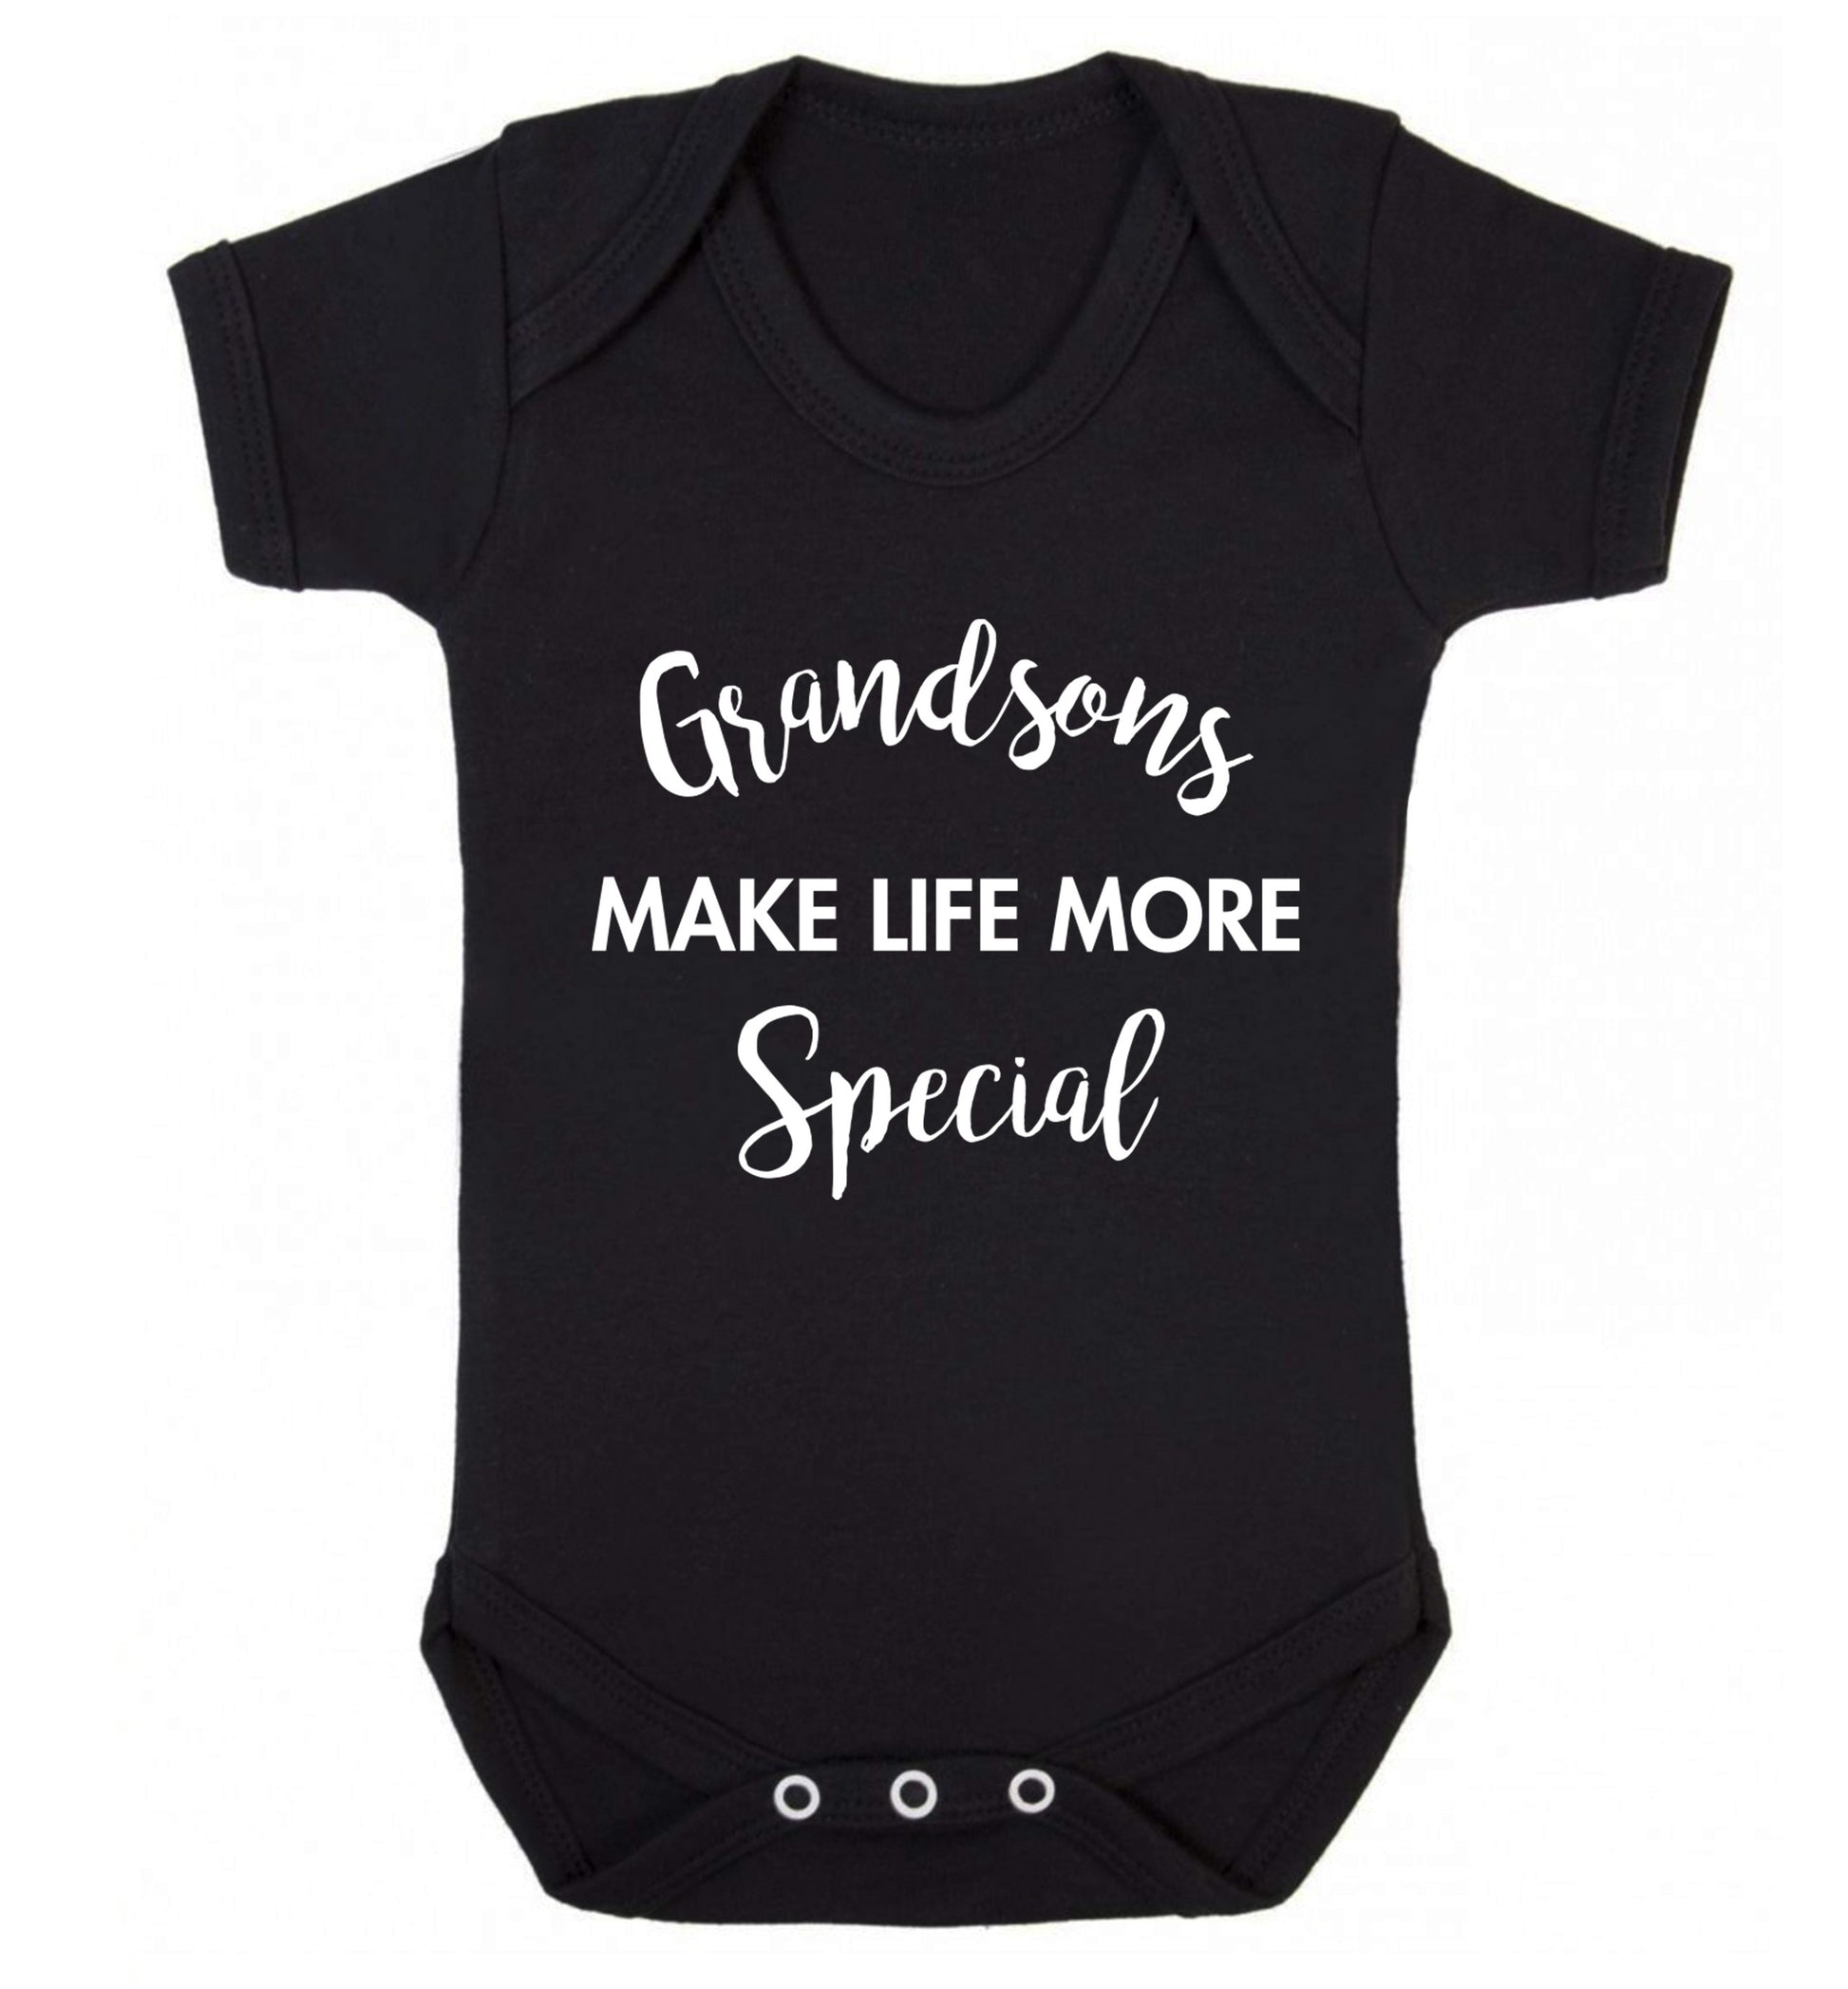 Grandsons make life more special Baby Vest black 18-24 months